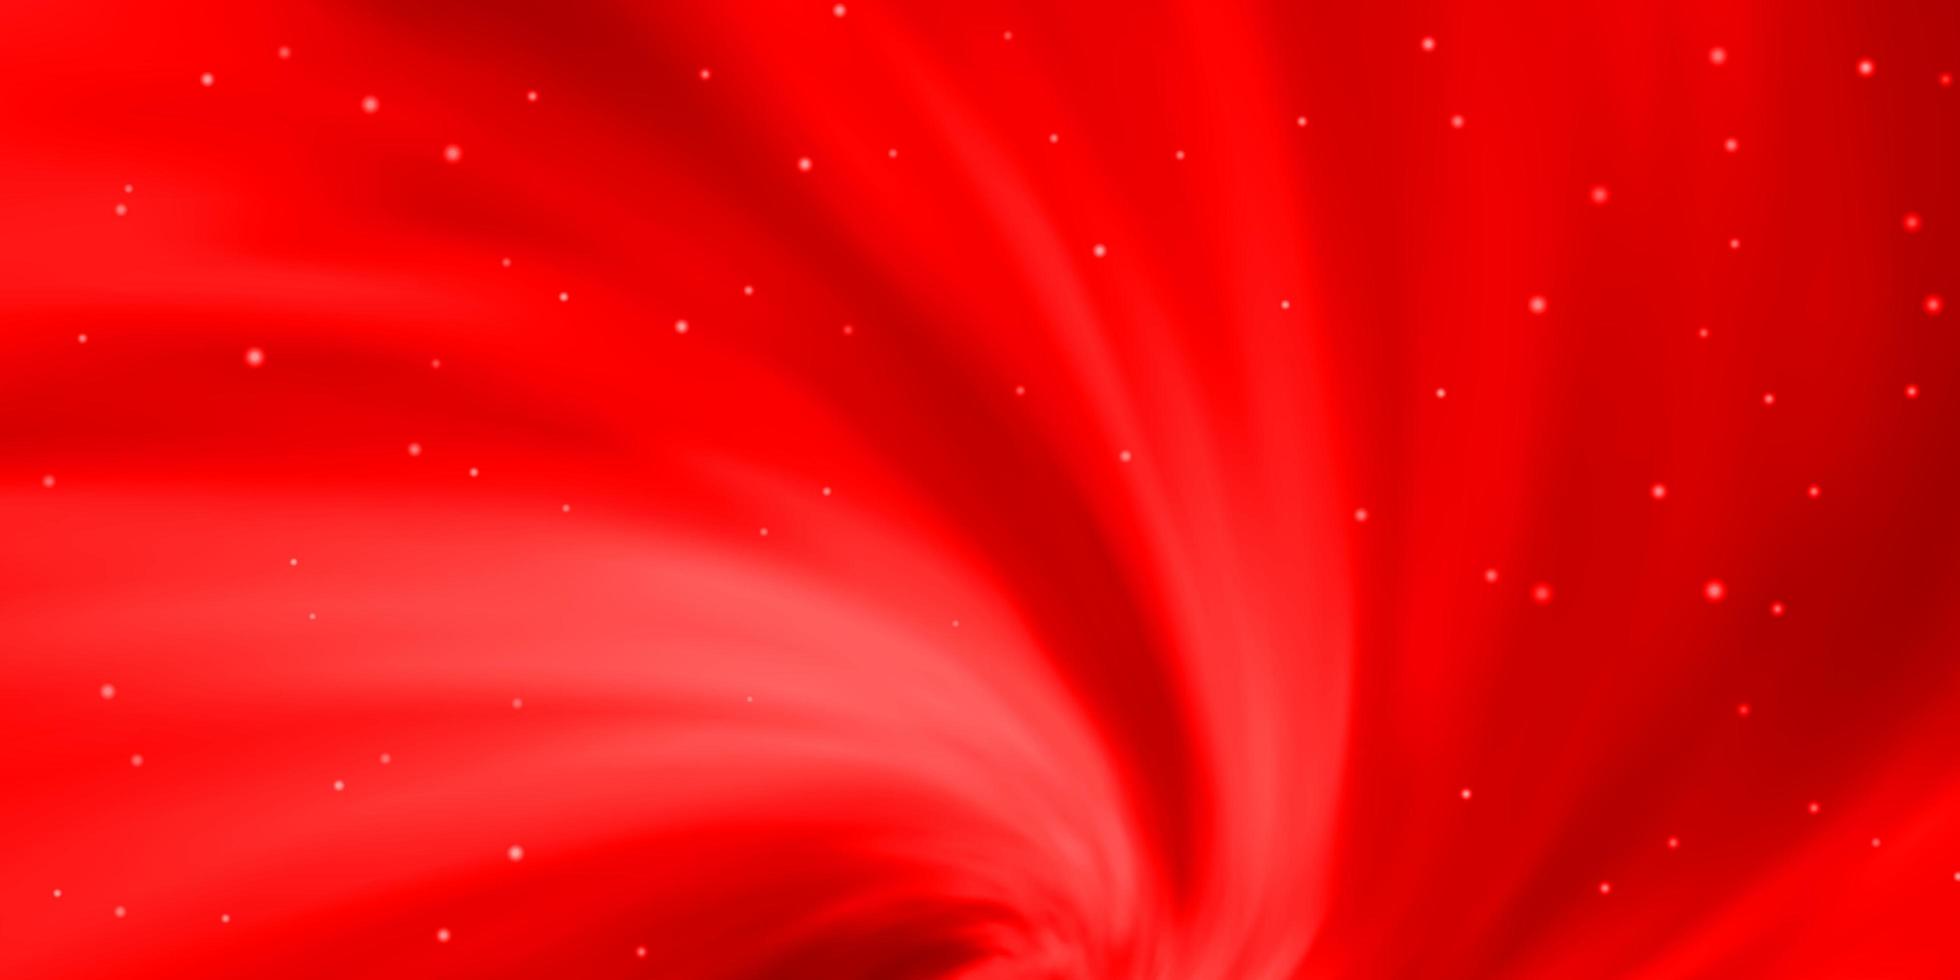 modelo de vetor vermelho claro com estrelas de néon.